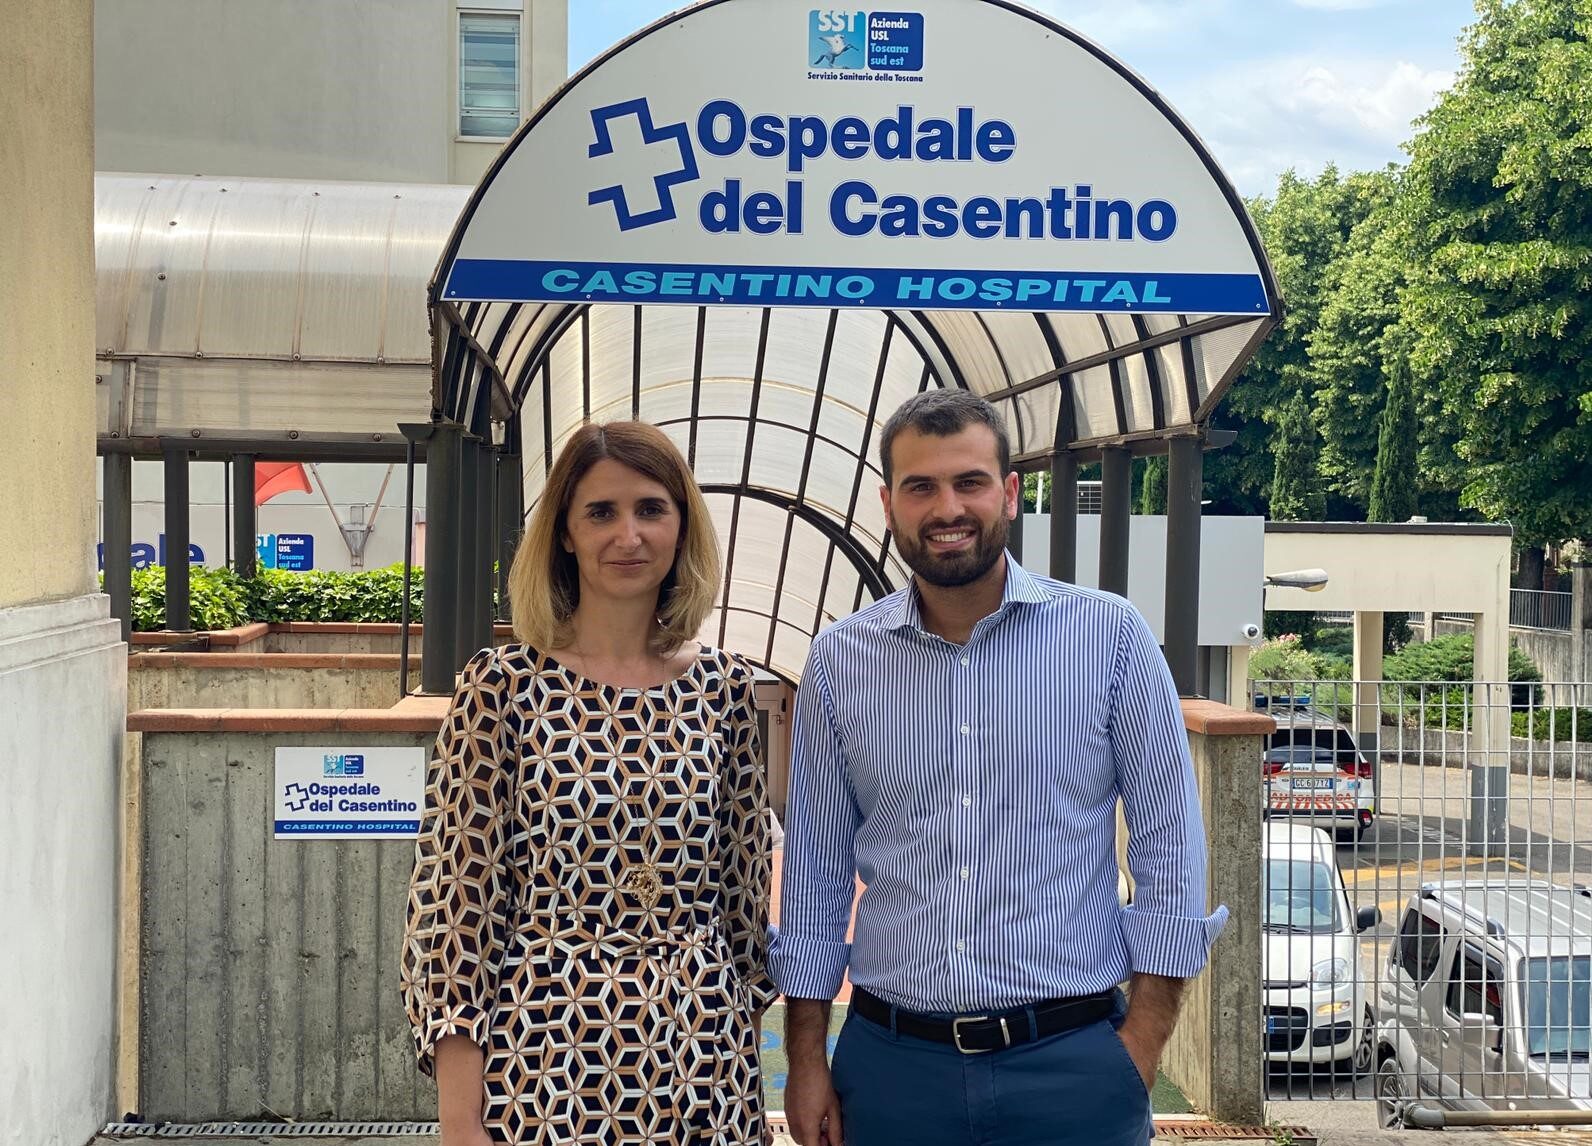 Ospedale del Casentino: unione d’intenti tra ASL Toscana sud est e Comuni della Vallata per il bene della comunità ed i servizi sanitari*